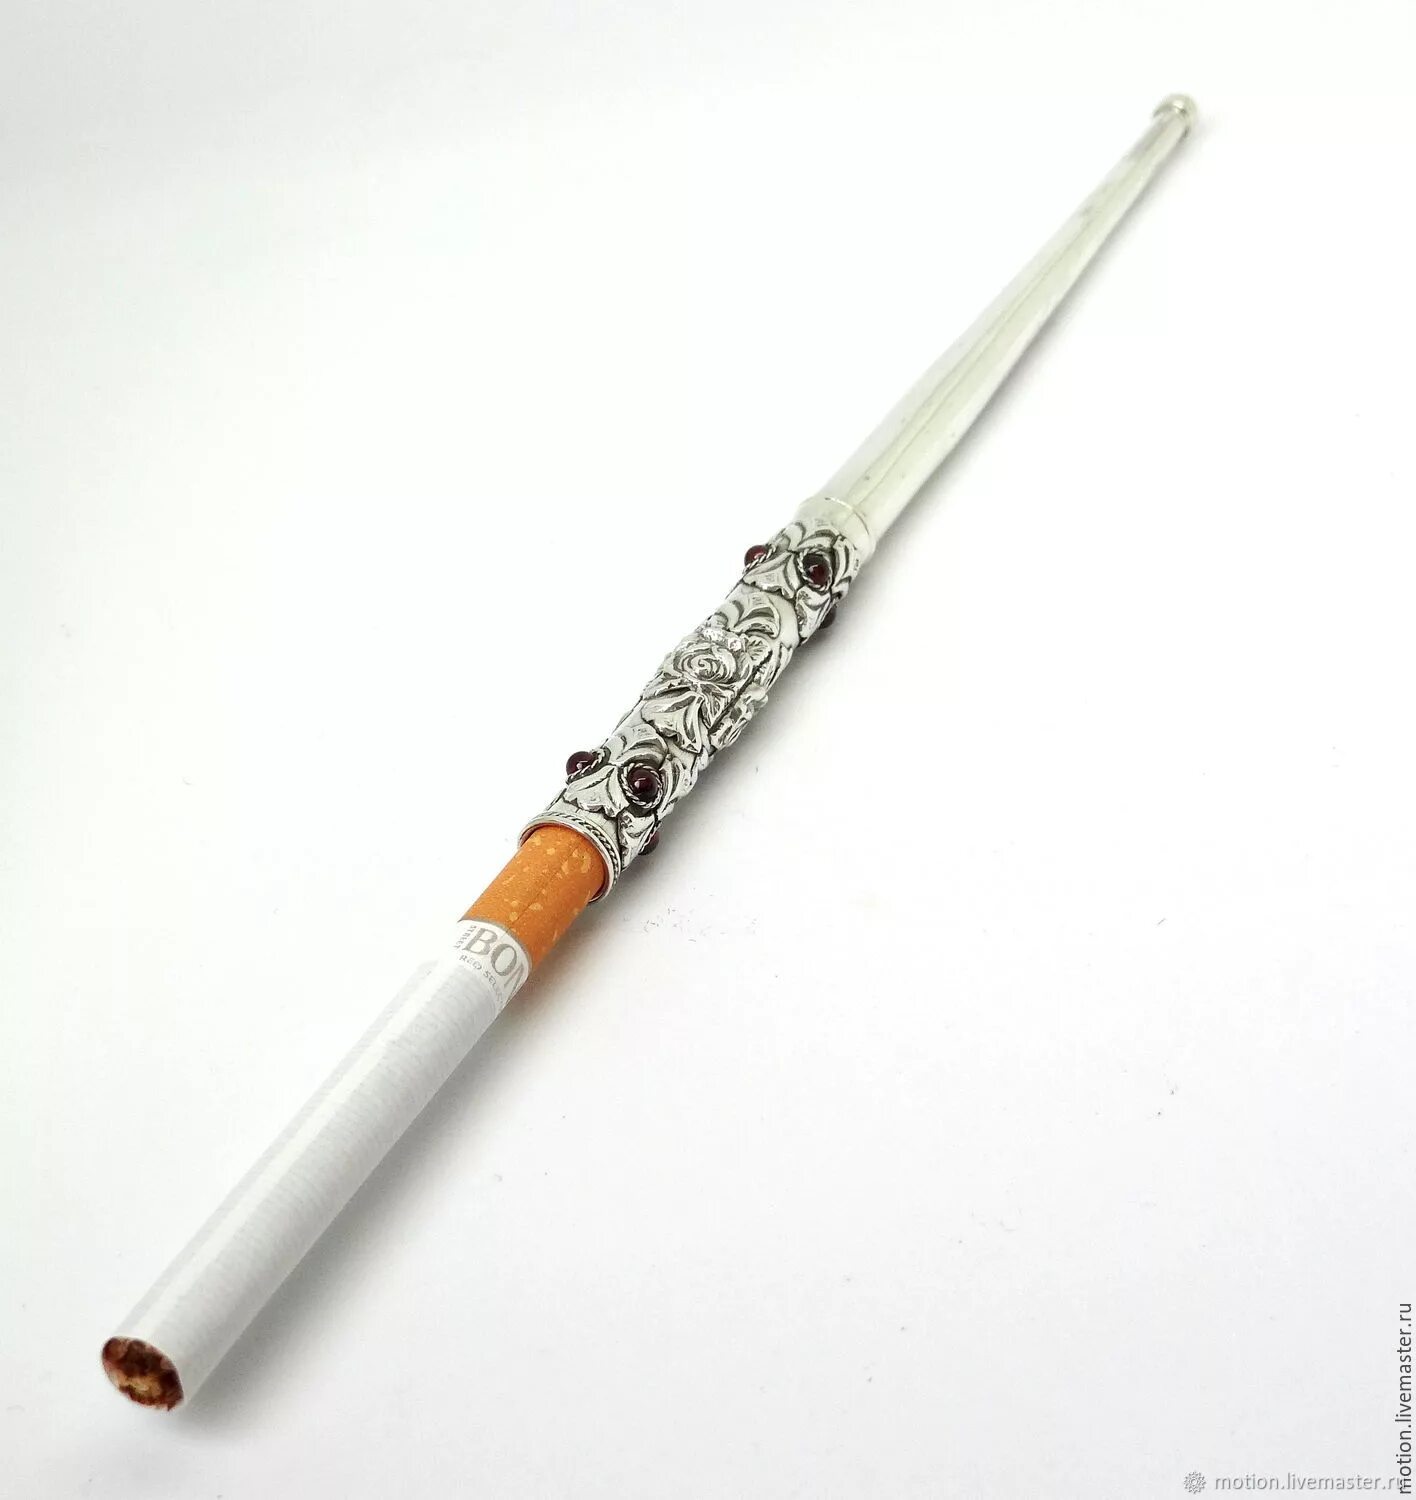 Мундштук для сигарет Haojue f6624. Мундштук для сигарет Shacom cc 062. Мундштук для сигарет NZH-058. Мундштук сигаретный f21096. Длинные сигареты купить